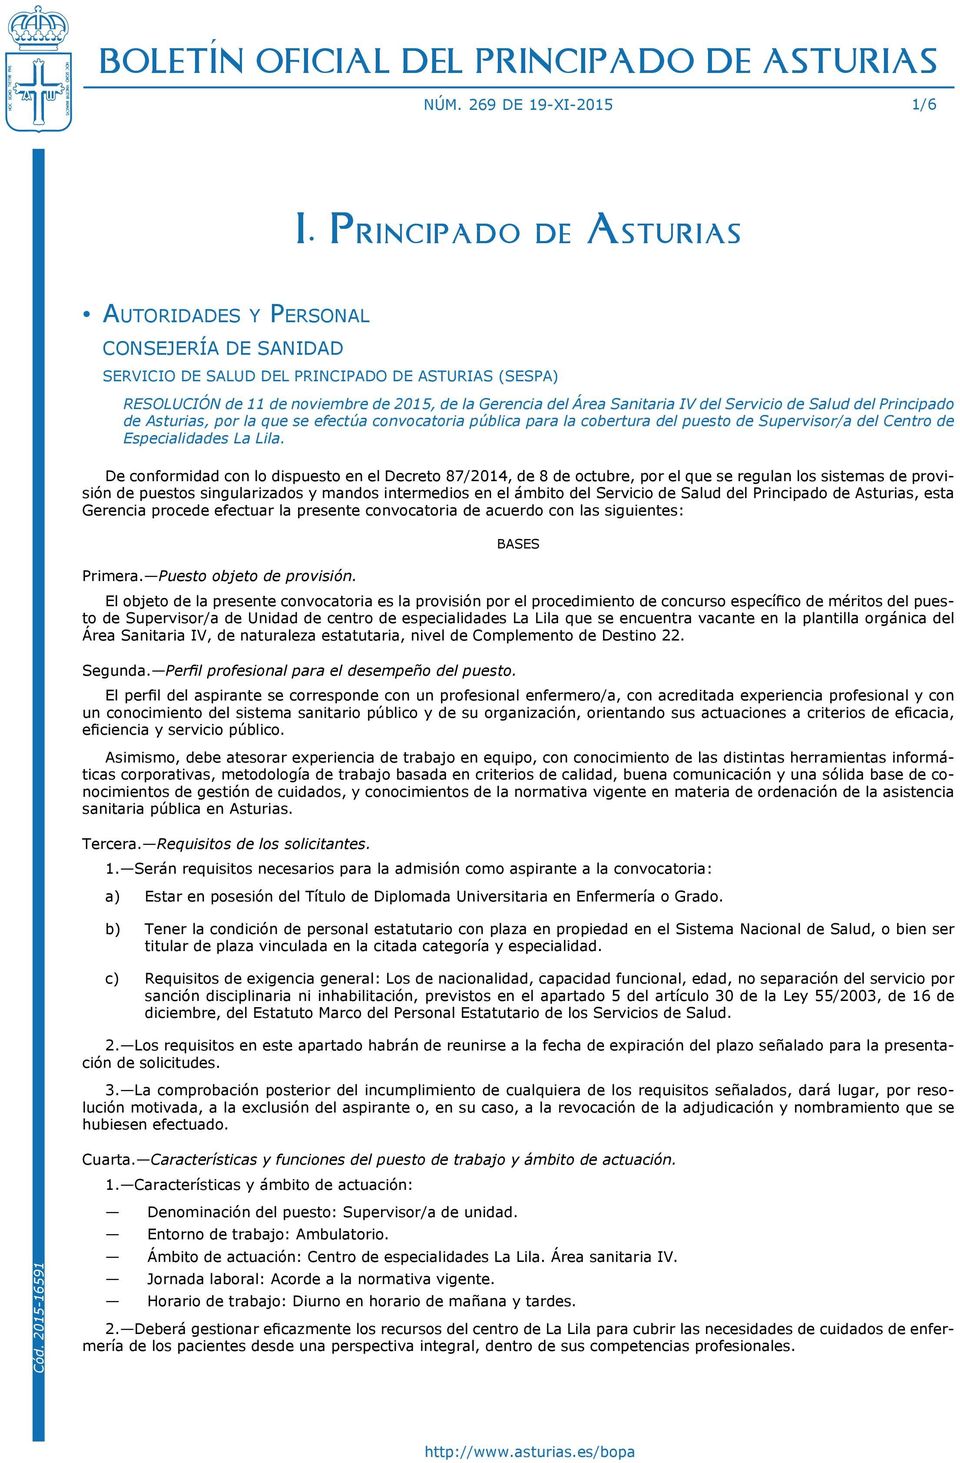 Sanitaria IV del Servicio de Salud del Principado de Asturias, por la que se efectúa convocatoria pública para la cobertura del puesto de Supervisor/a del Centro de Especialidades La Lila.